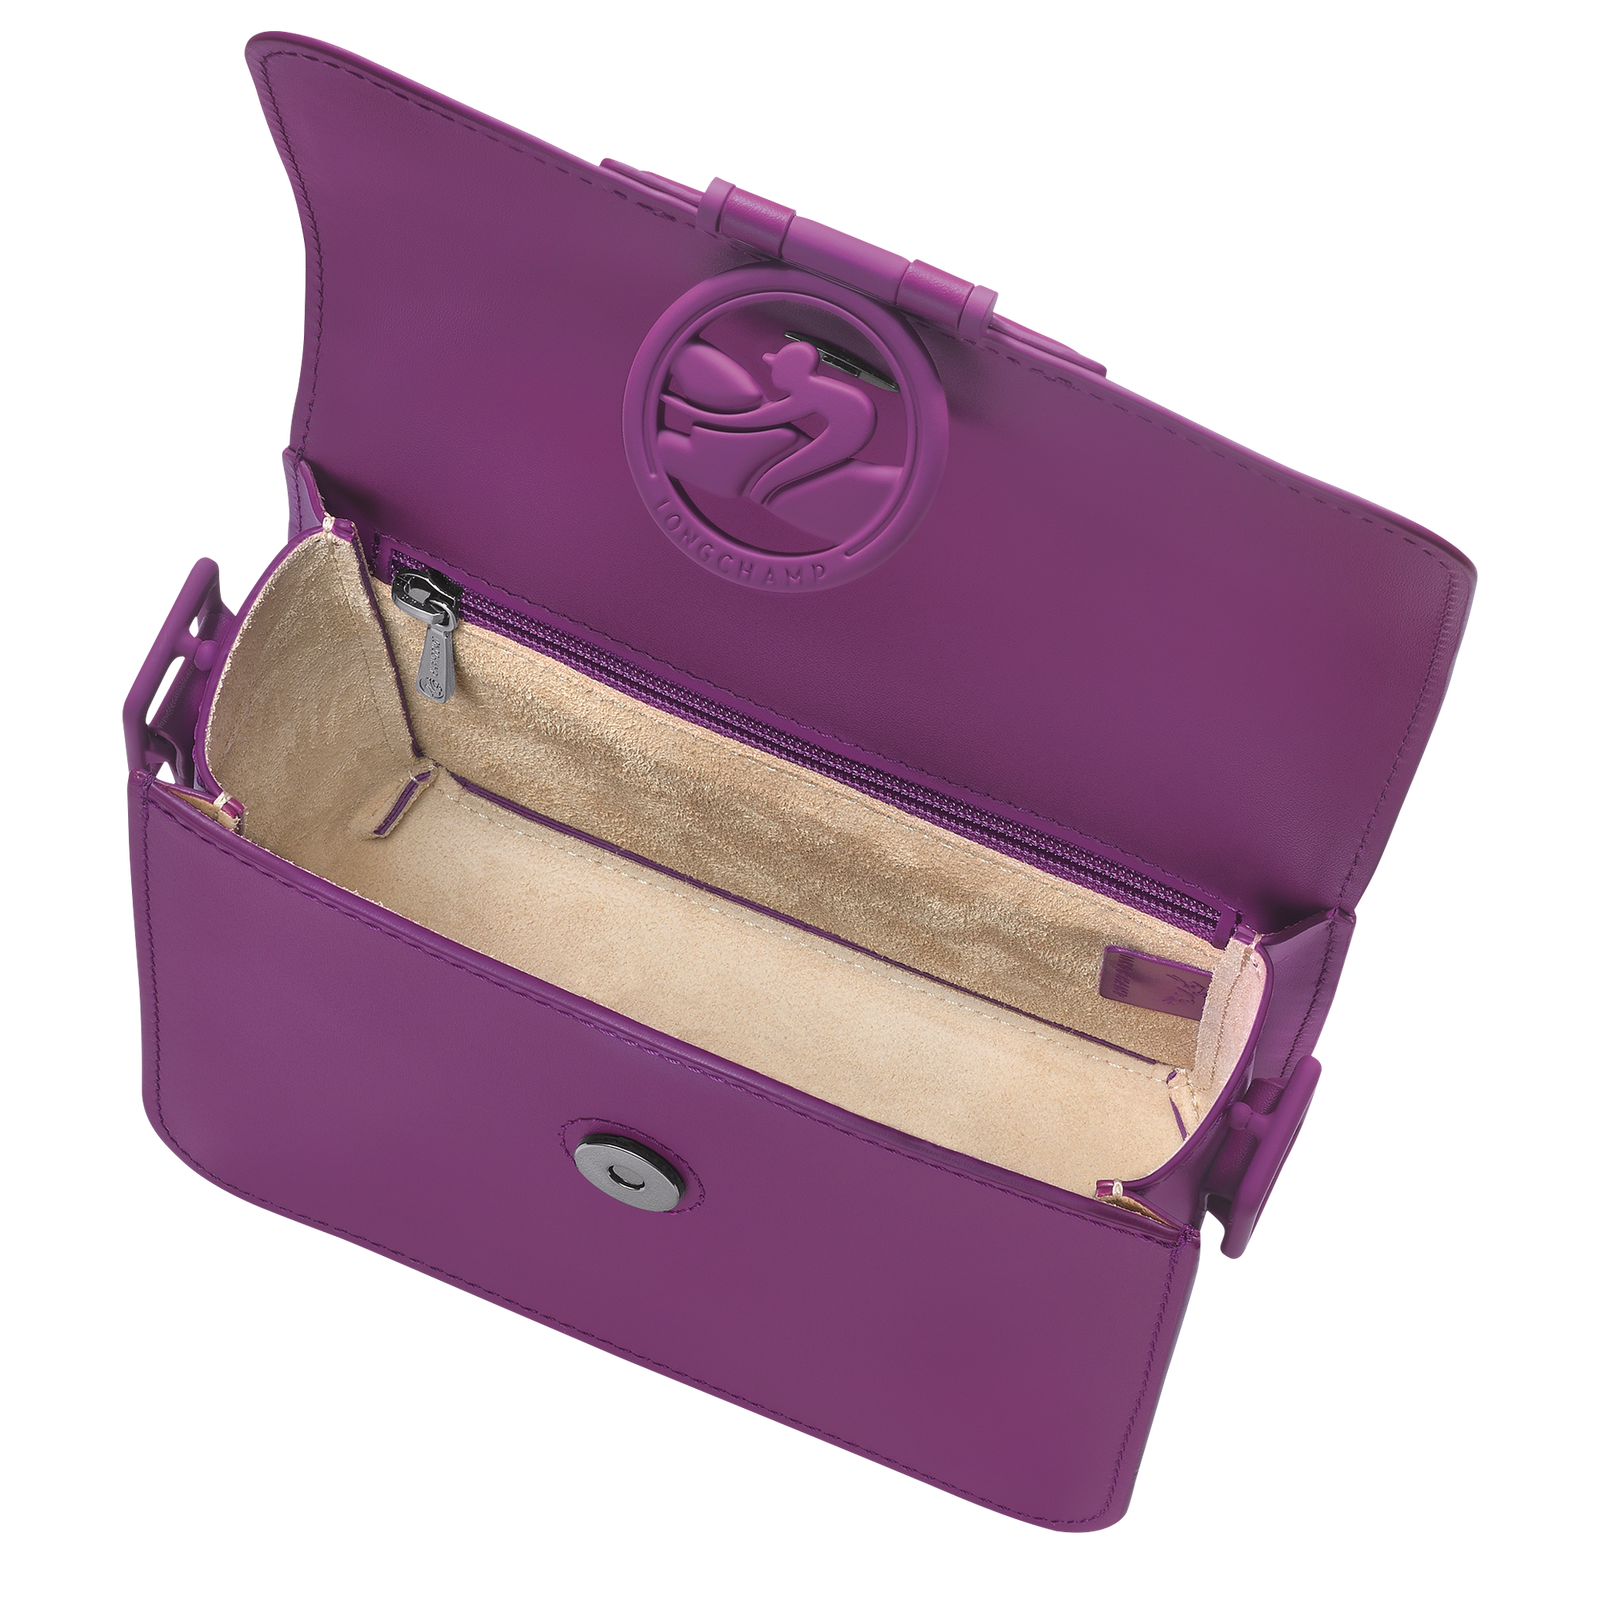 Box-Trot 斜揹袋 S, 紫色